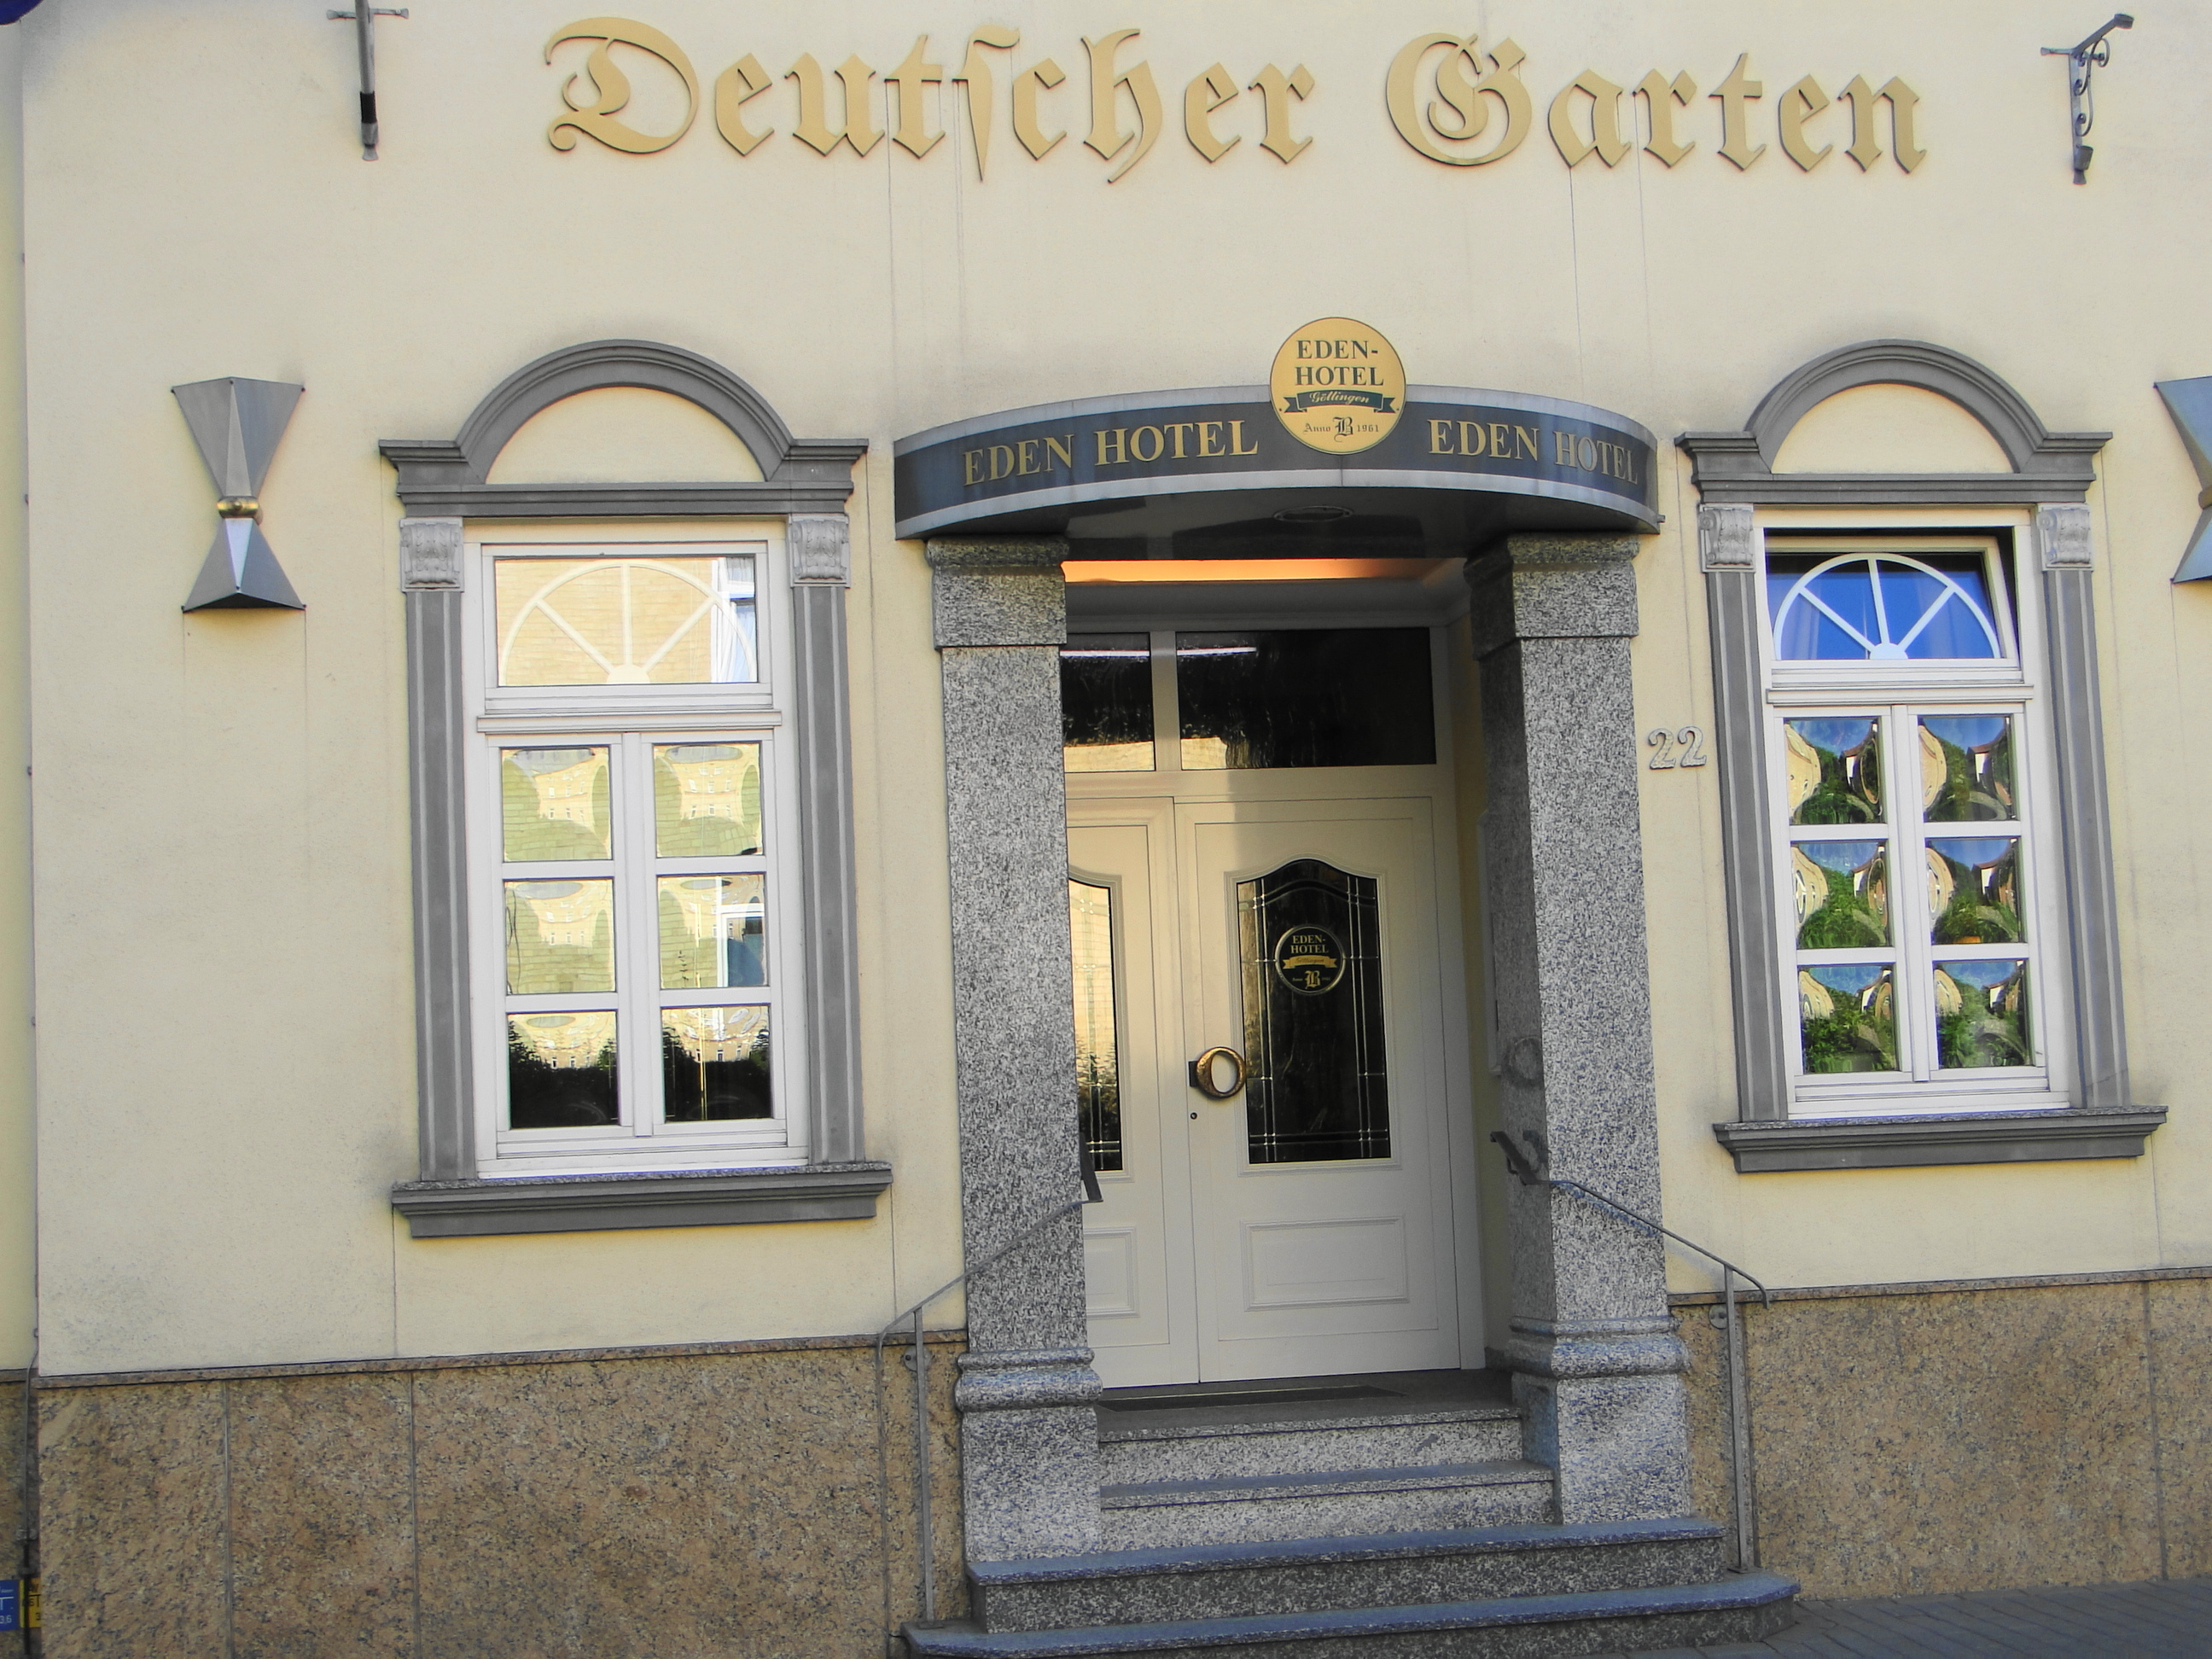 Eden Hotel (ehemals Deutscher Garten) in der Reinhäuser Landstr. 22 a, Eingang